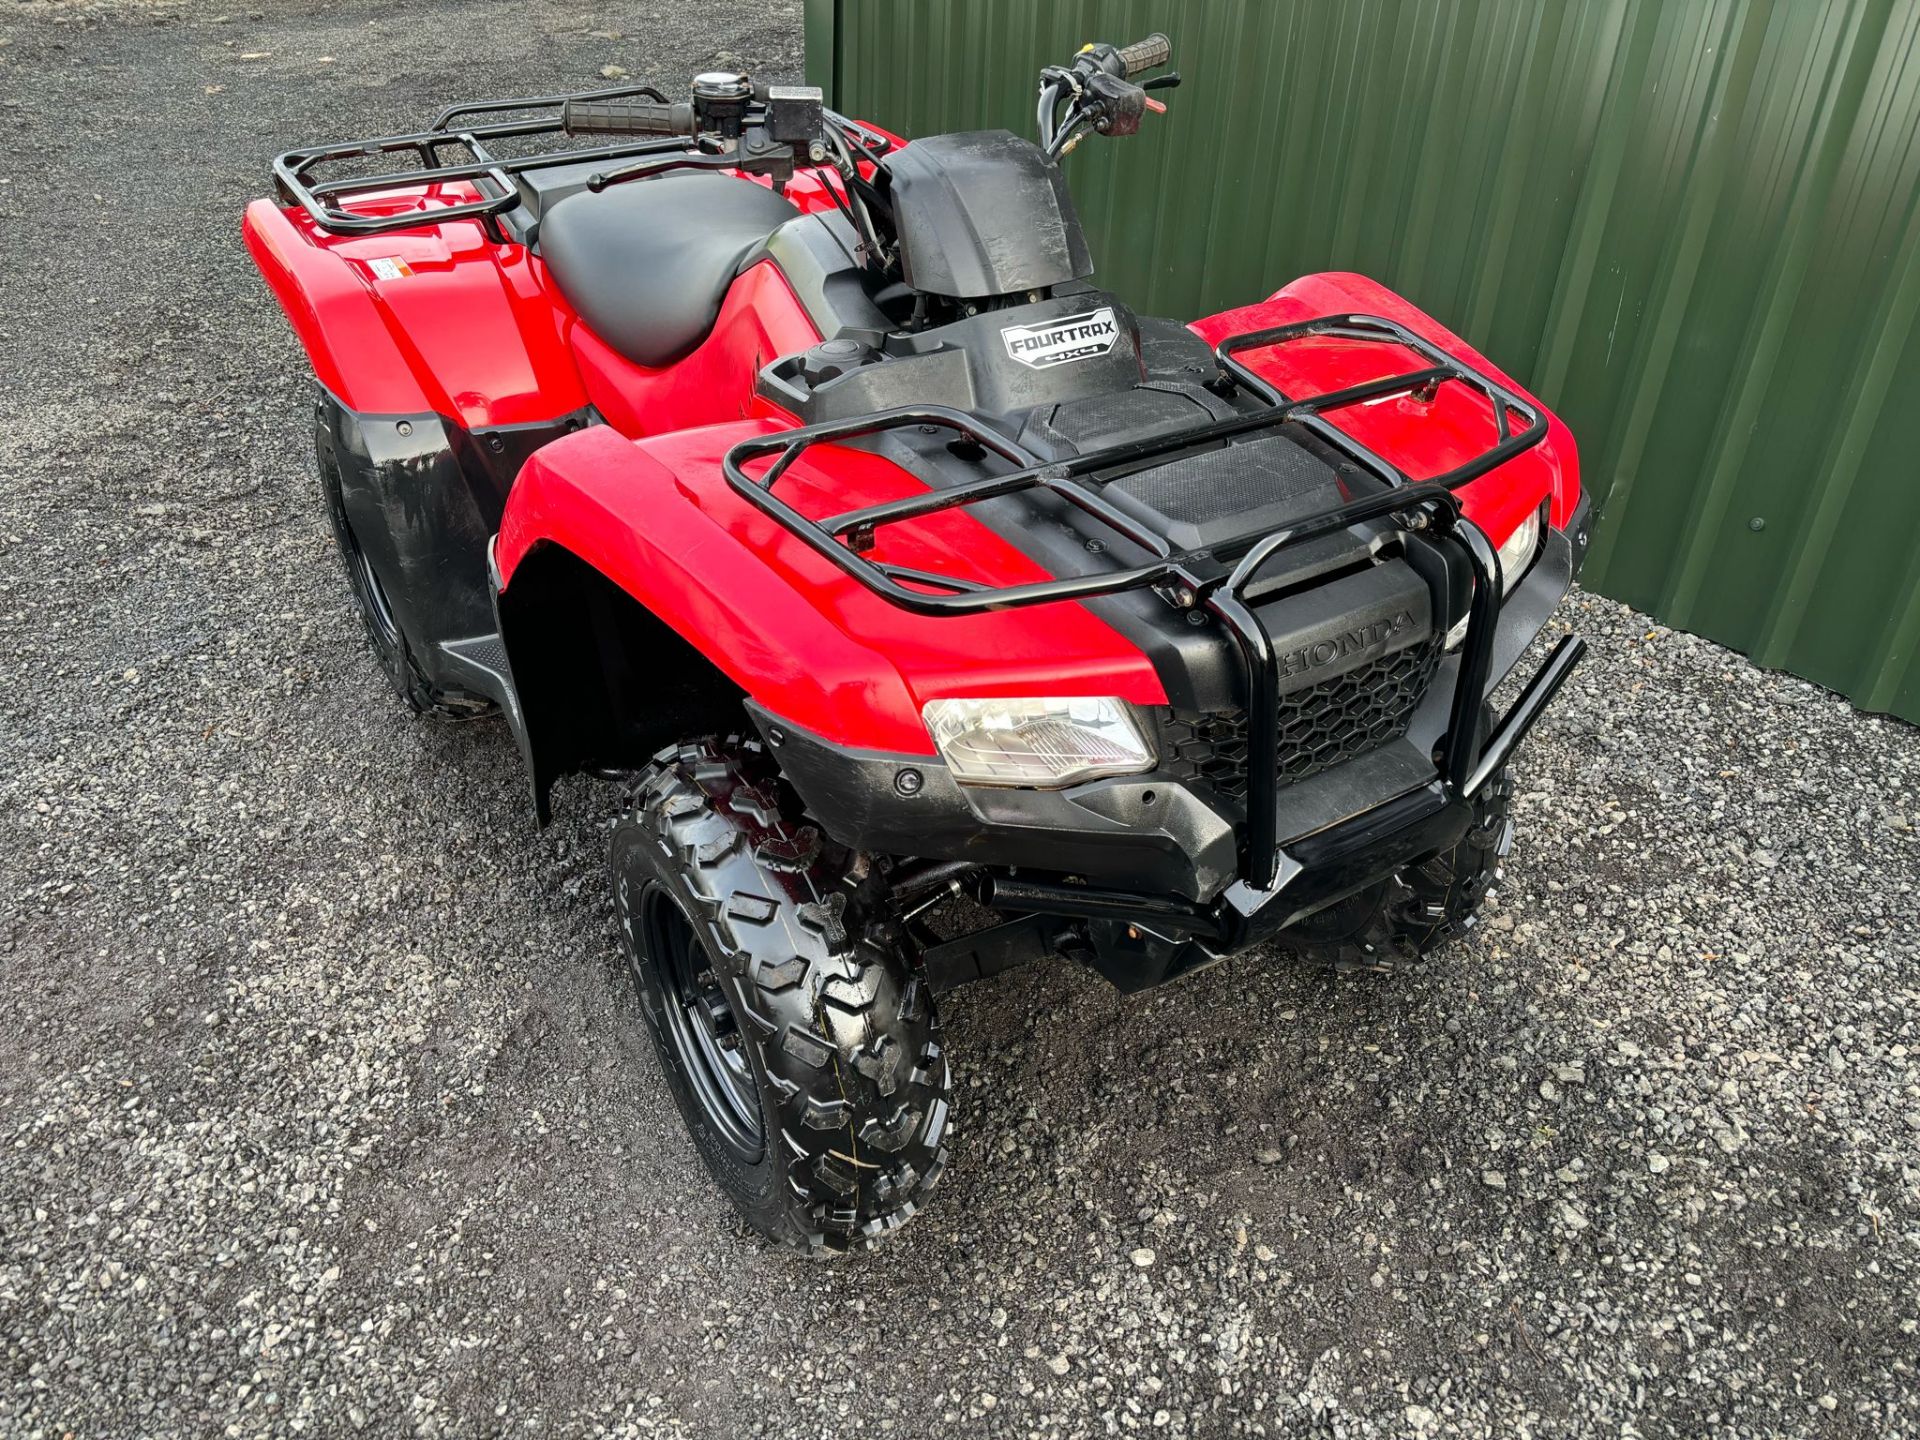 2019 ROAD REGISTERED HONDA TRX420 FARM QUAD BIKE ATV FOURTRAX TRX 420FM 4X4 4WD